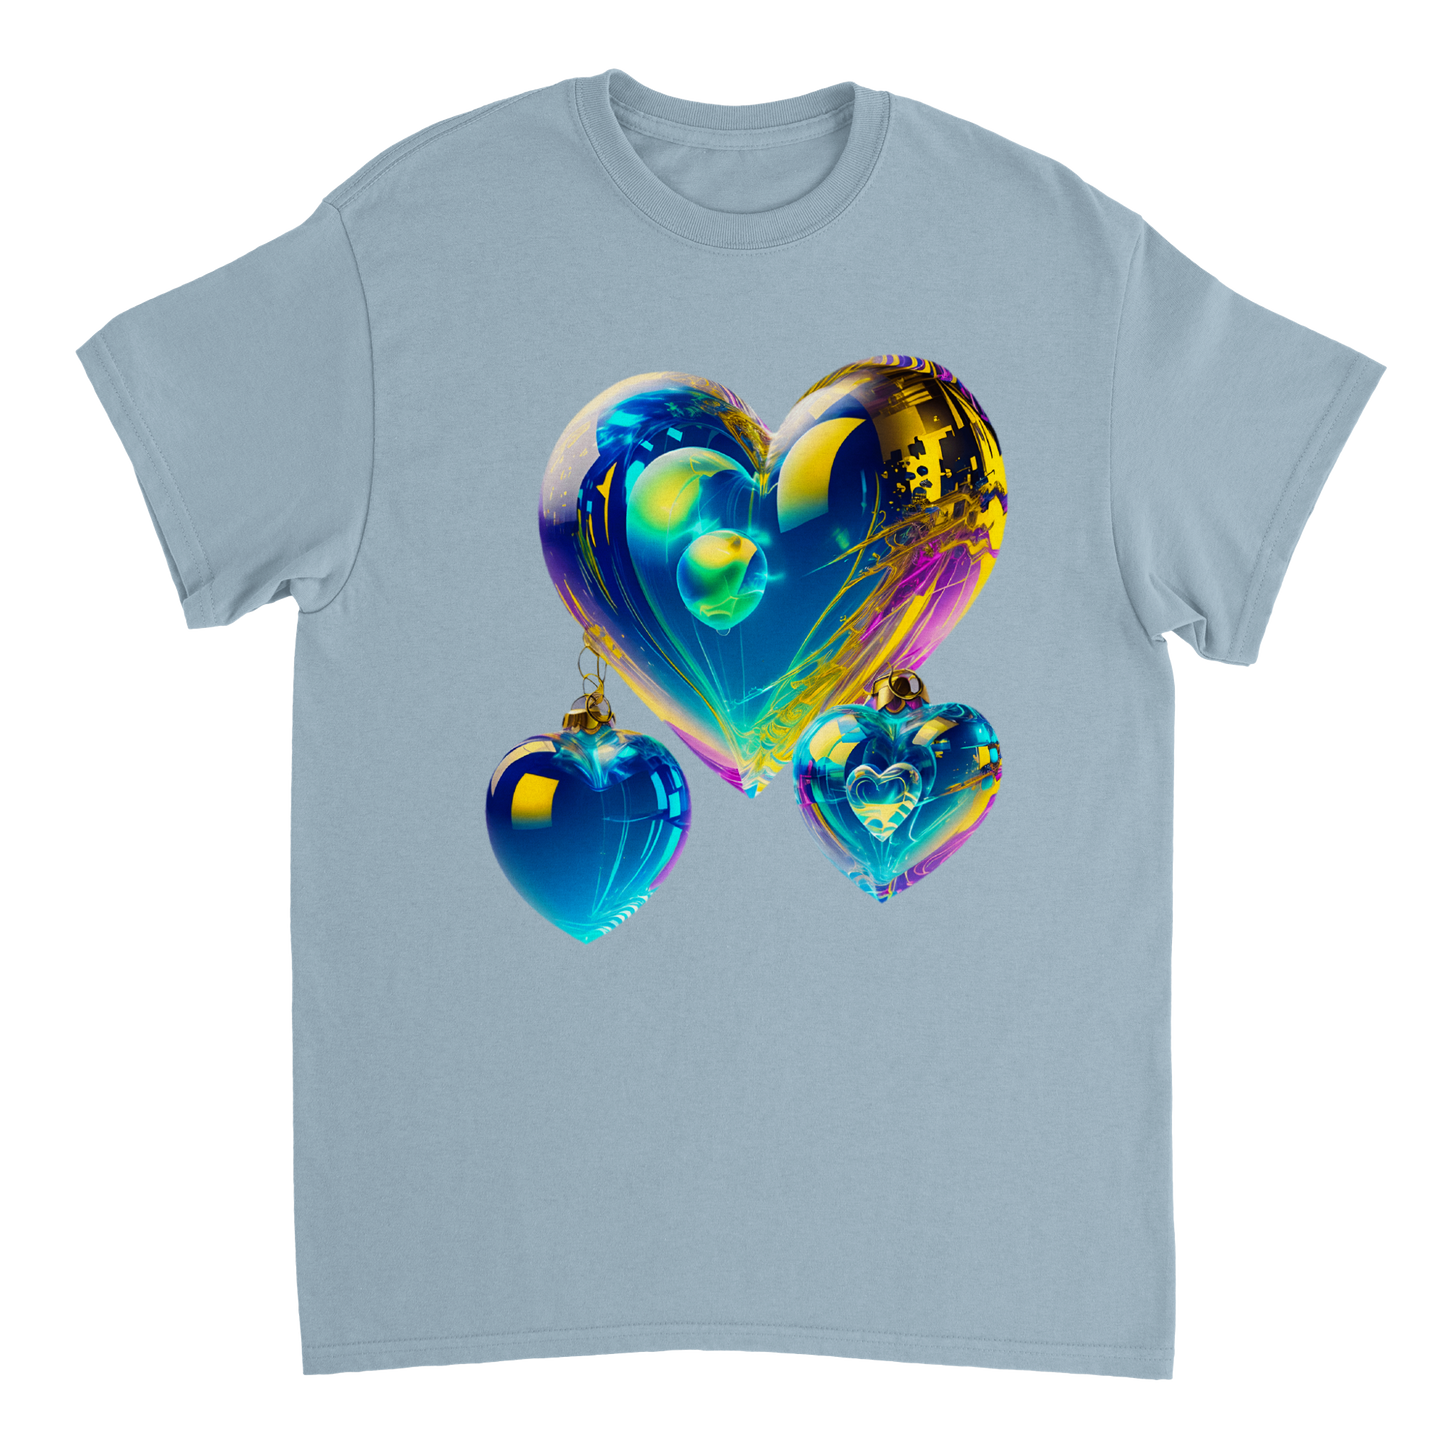 Love Heart - Heavyweight Unisex Crewneck T-shirt 1